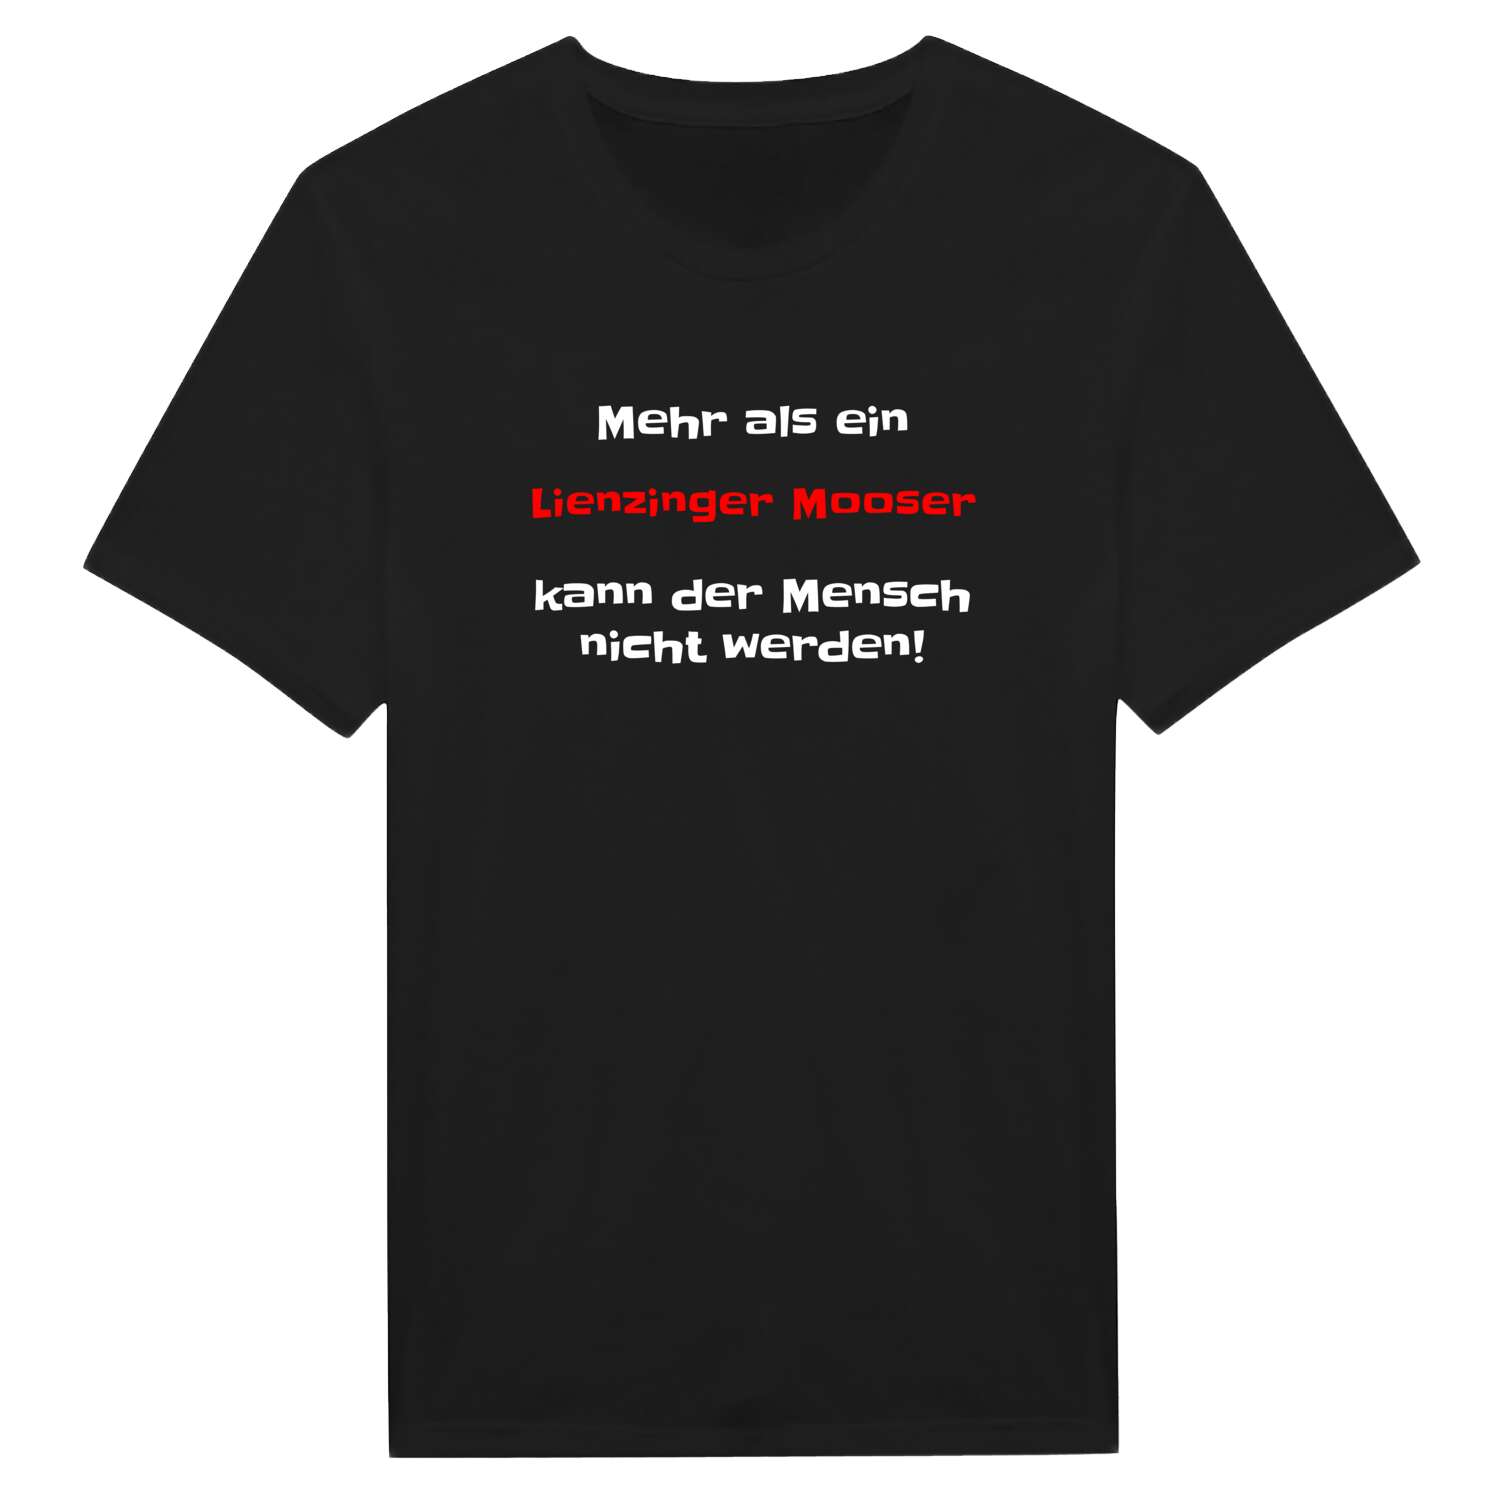 Lienzinger Moos T-Shirt »Mehr als ein«